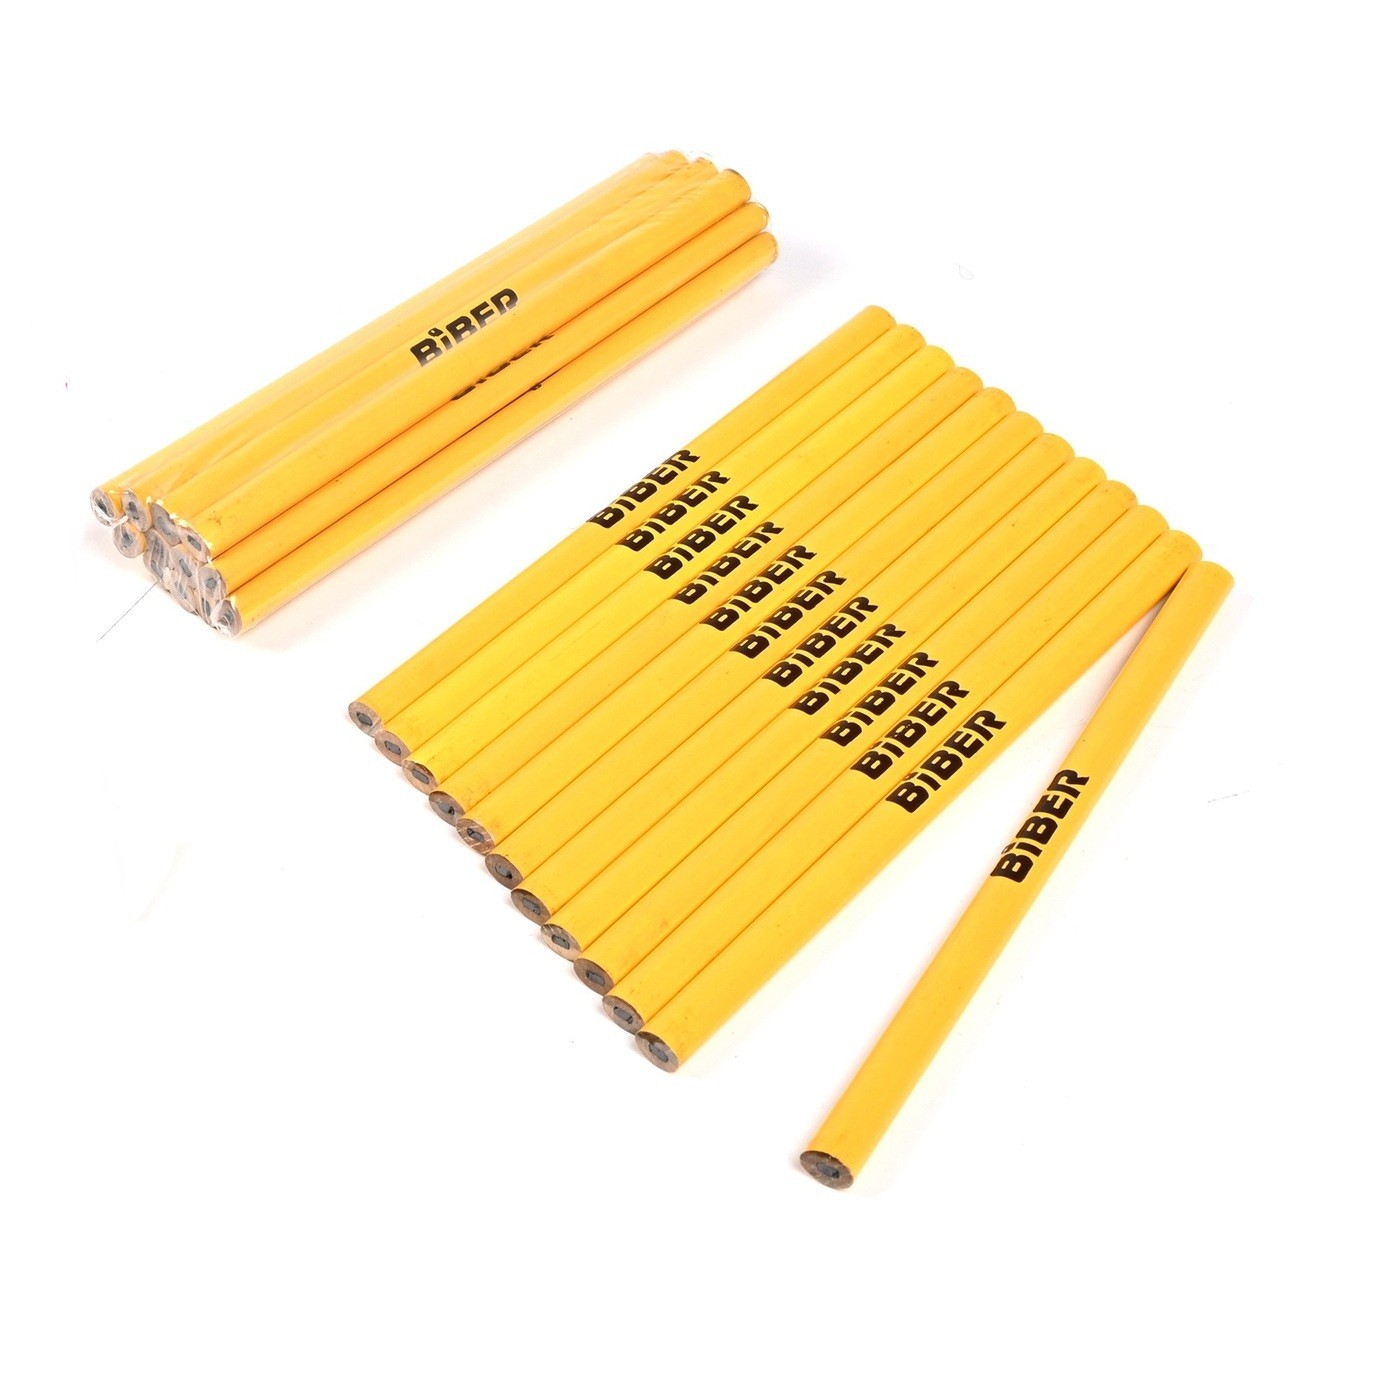 Бибер 43001 карандаши строительные 180мм (уп.12шт) (12/240)